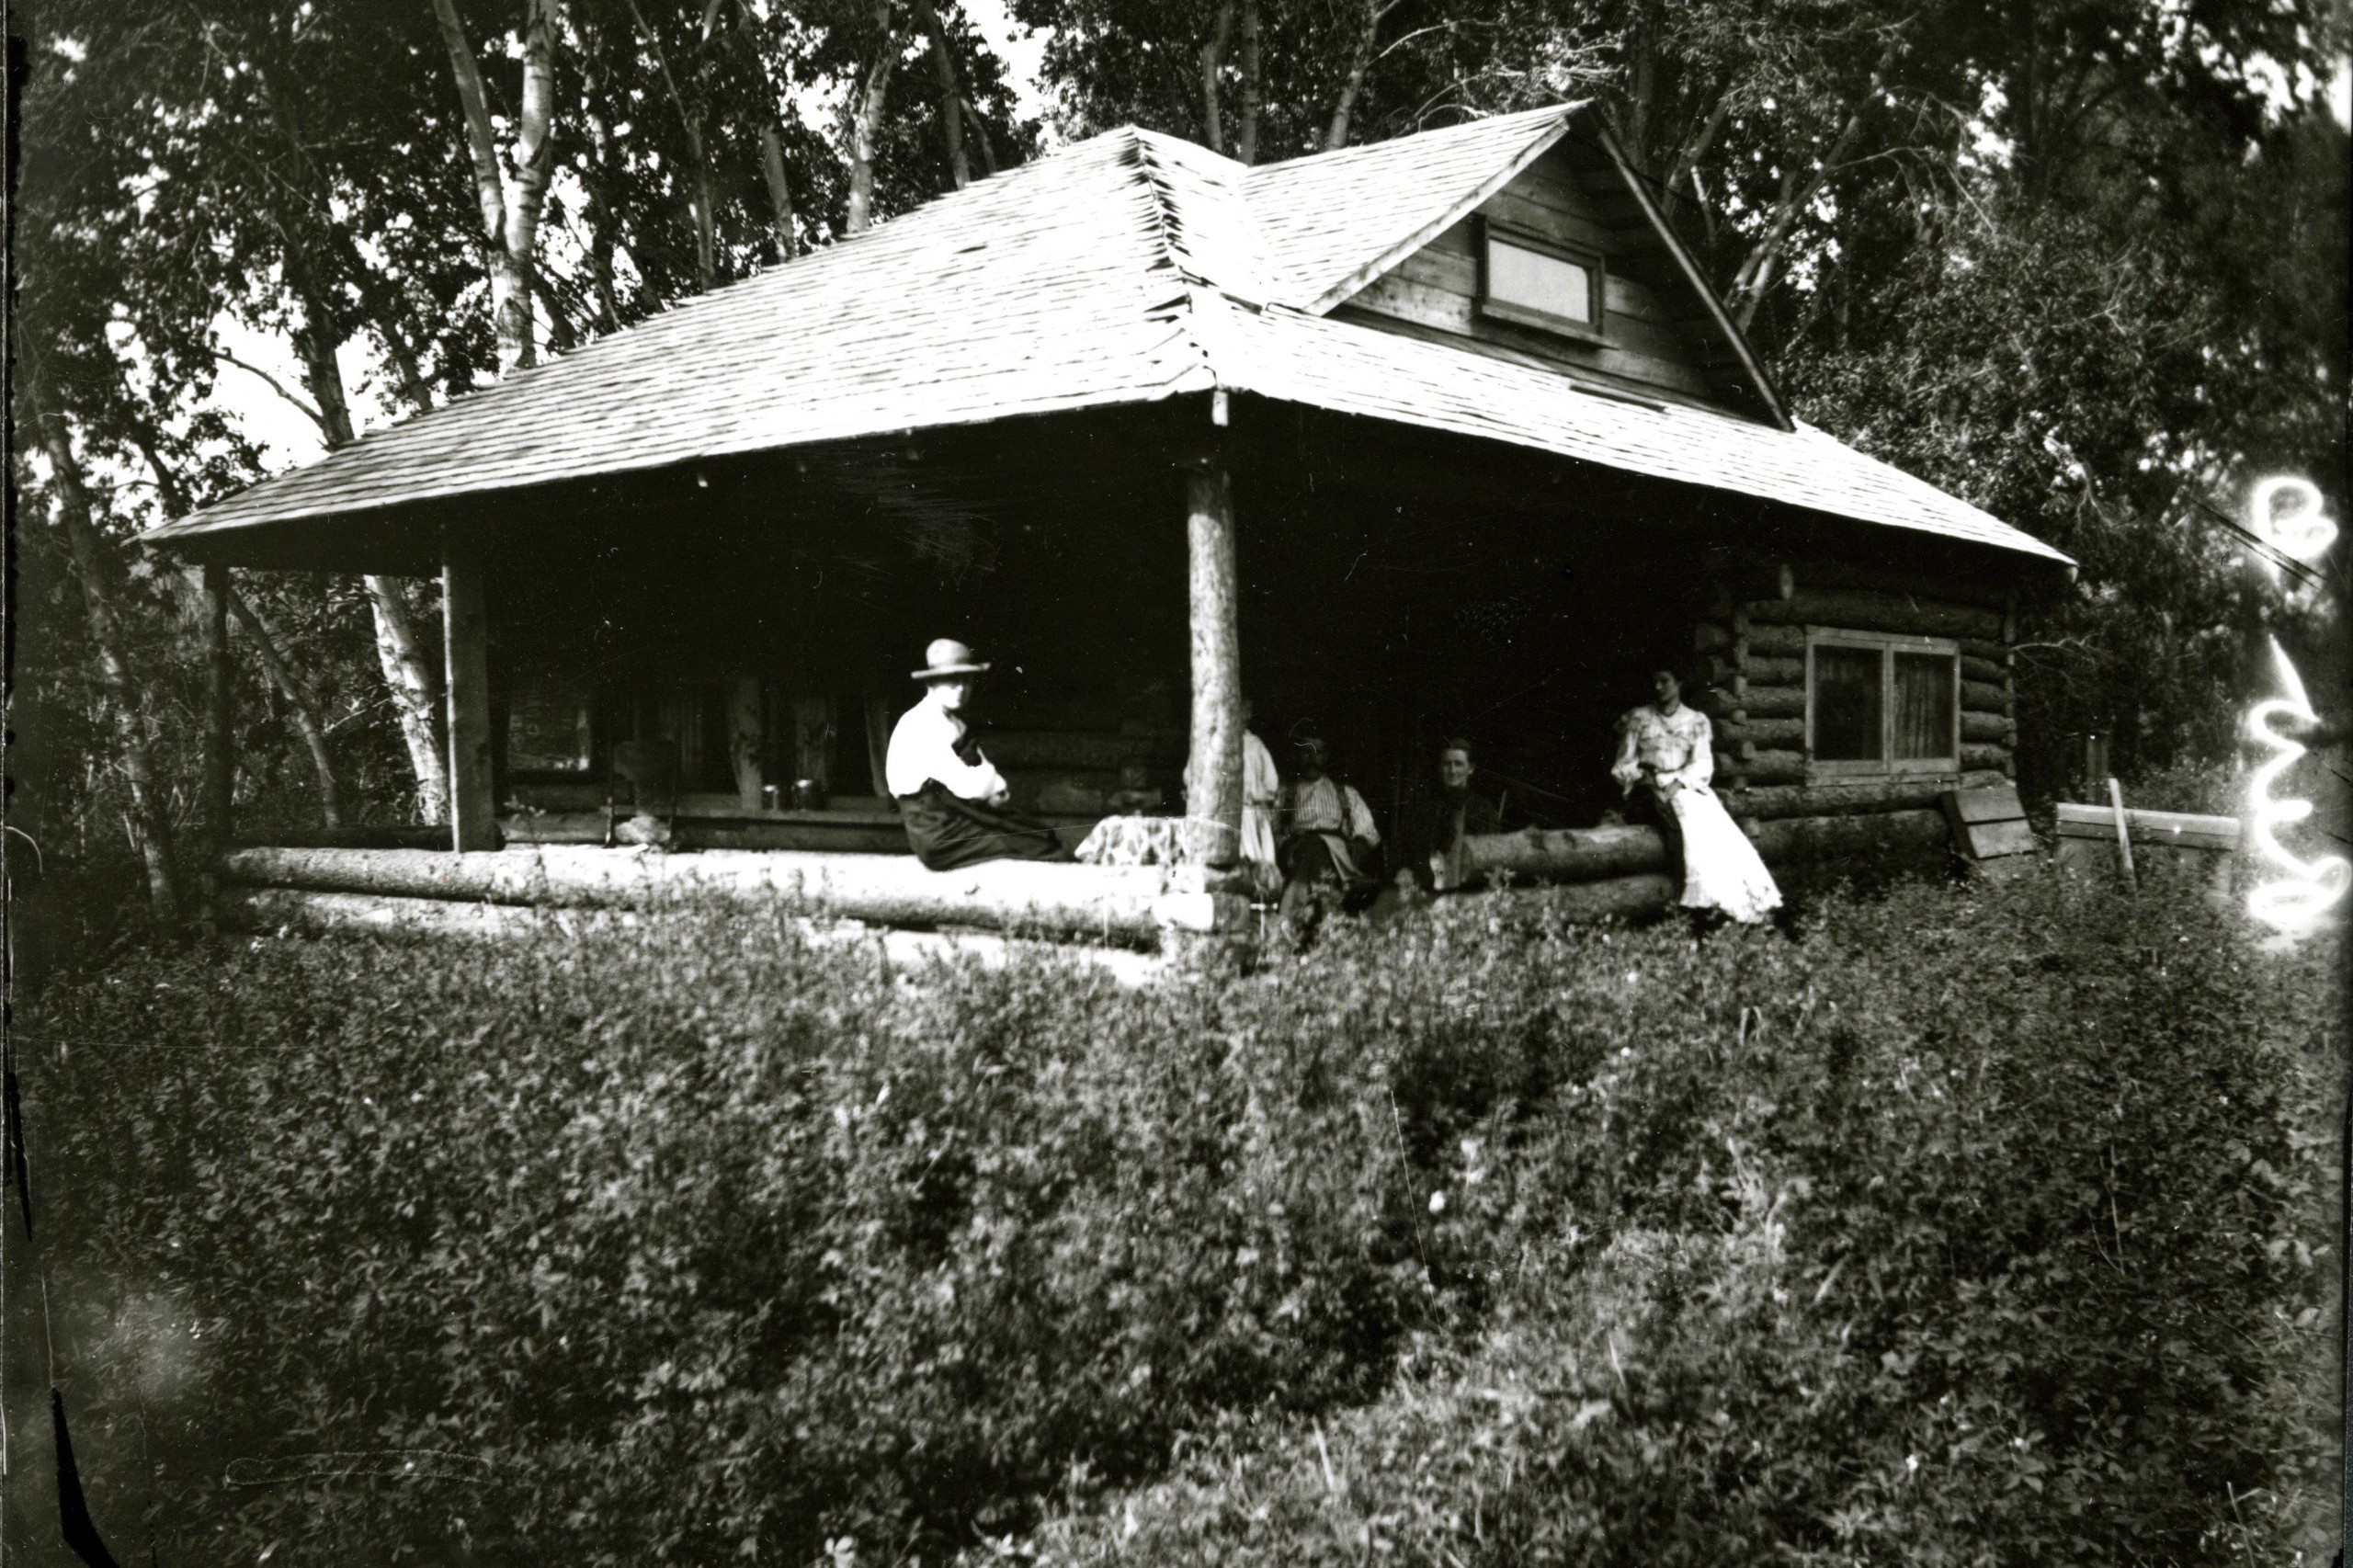 Idlewild Lodge - idlewildlodge.github.io - Circa 1910 - Cabin at Idlewild in Big Thompson Canyon - Fort Collin